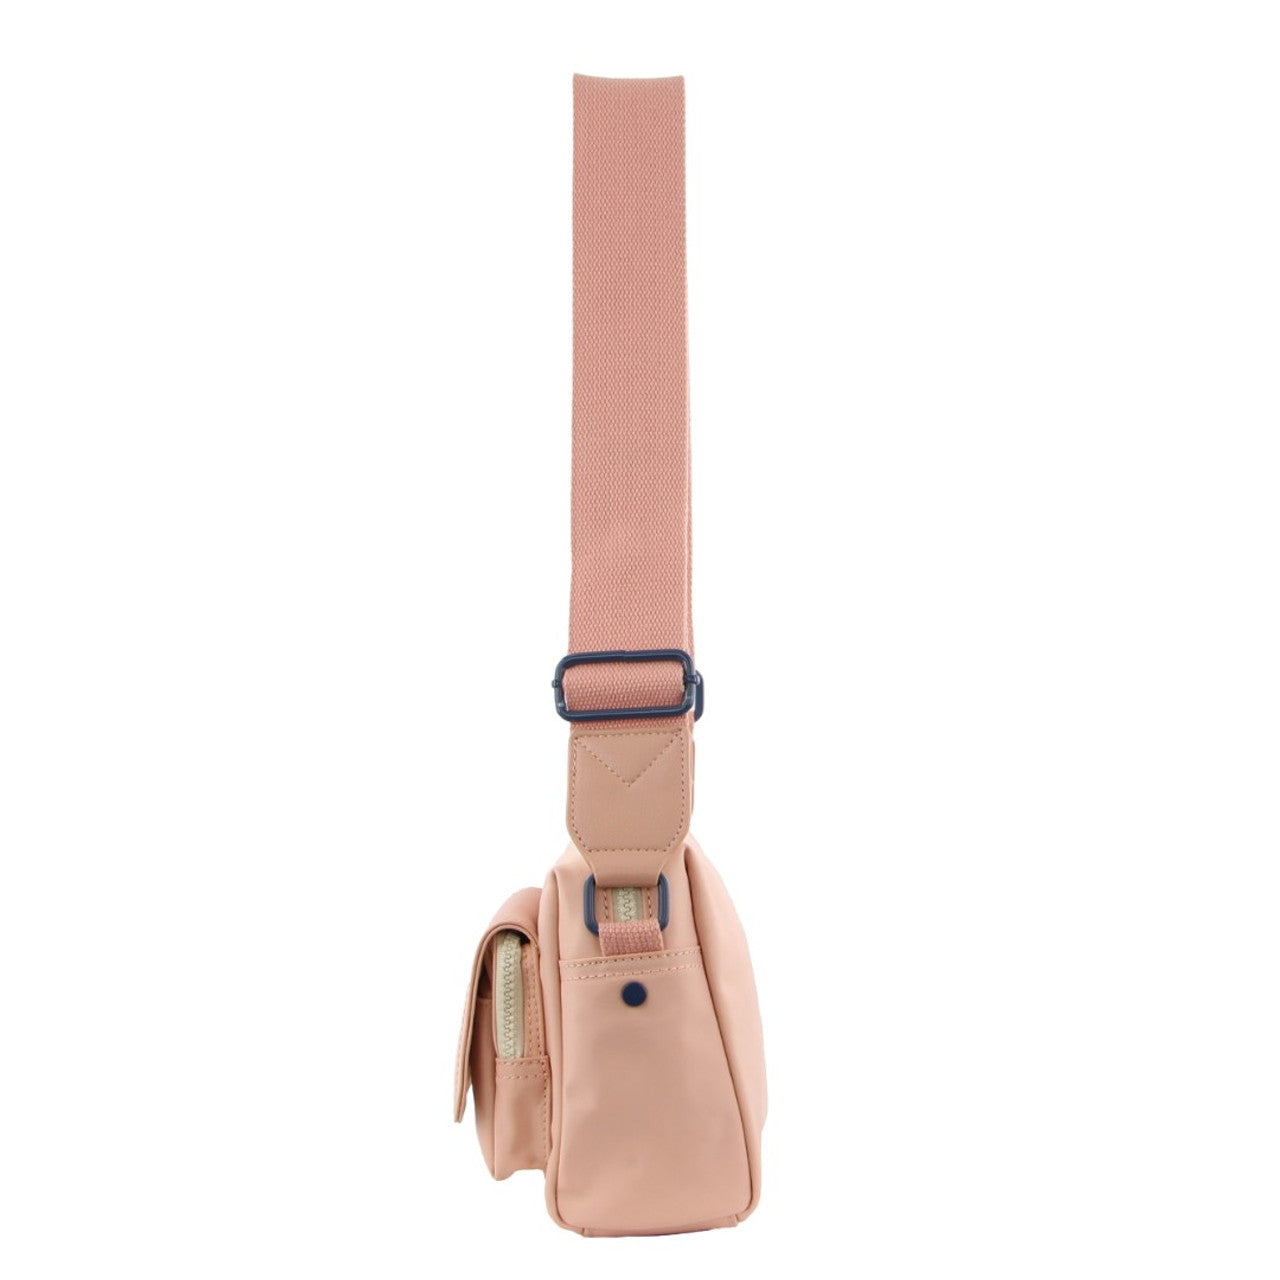 GAP - 10 Nylon shoulder bag front pocket - Blush-2